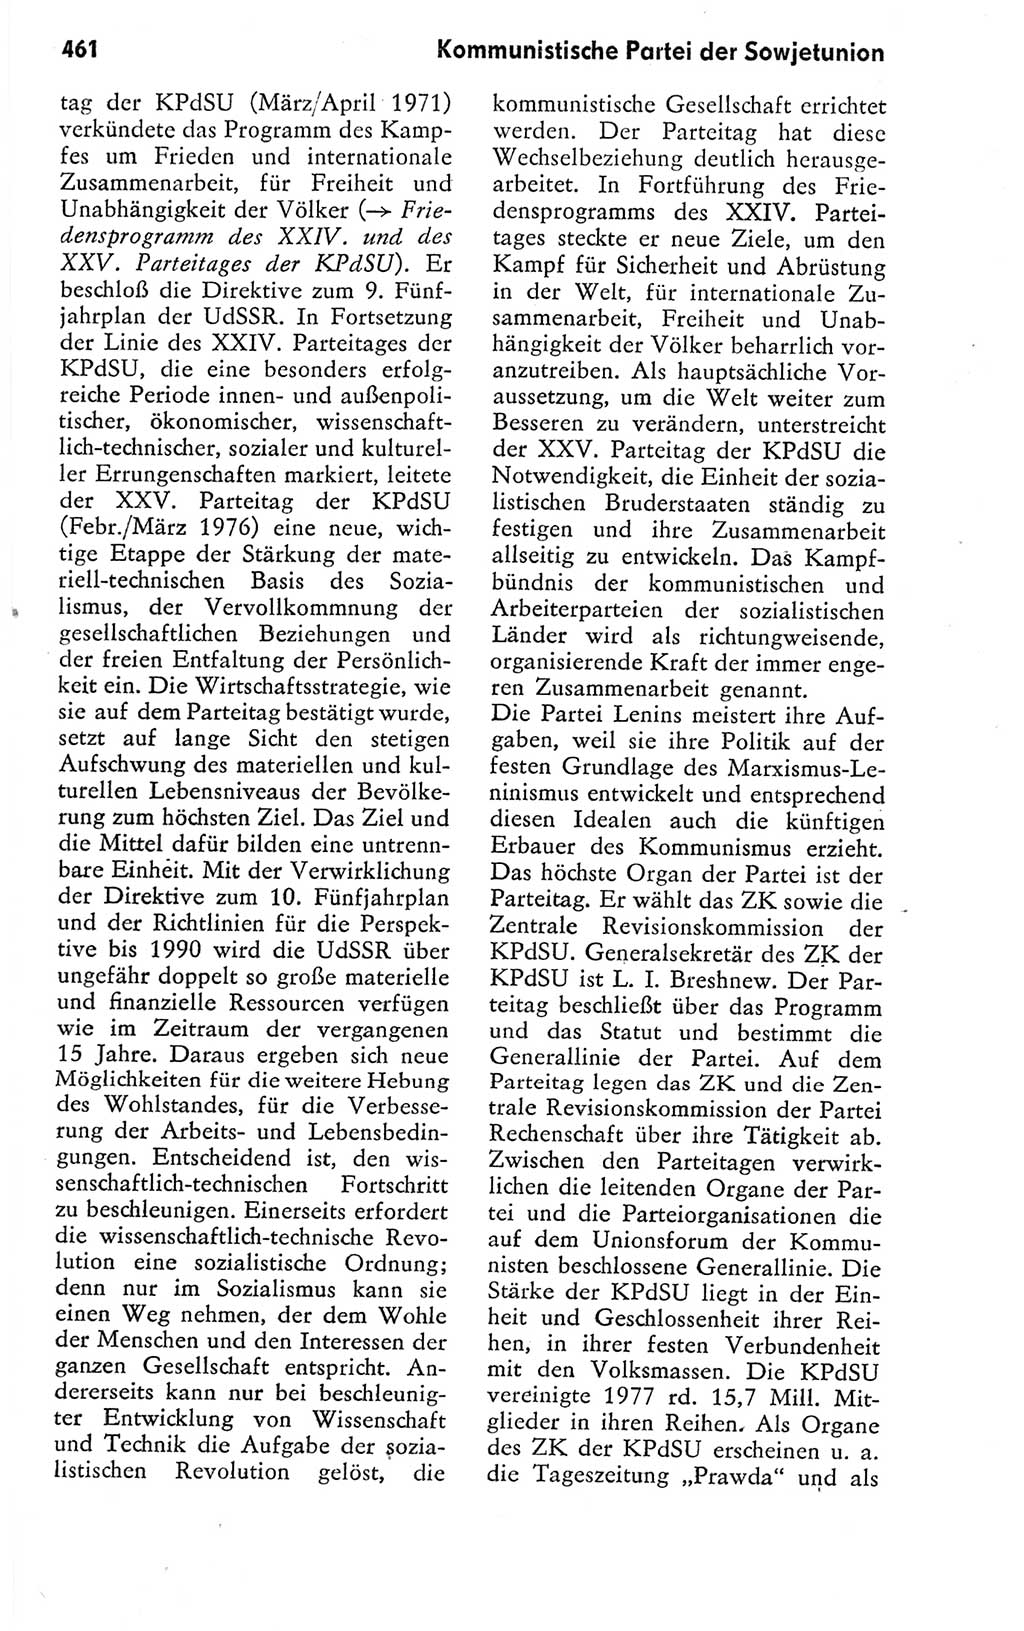 Kleines politisches Wörterbuch [Deutsche Demokratische Republik (DDR)] 1978, Seite 461 (Kl. pol. Wb. DDR 1978, S. 461)